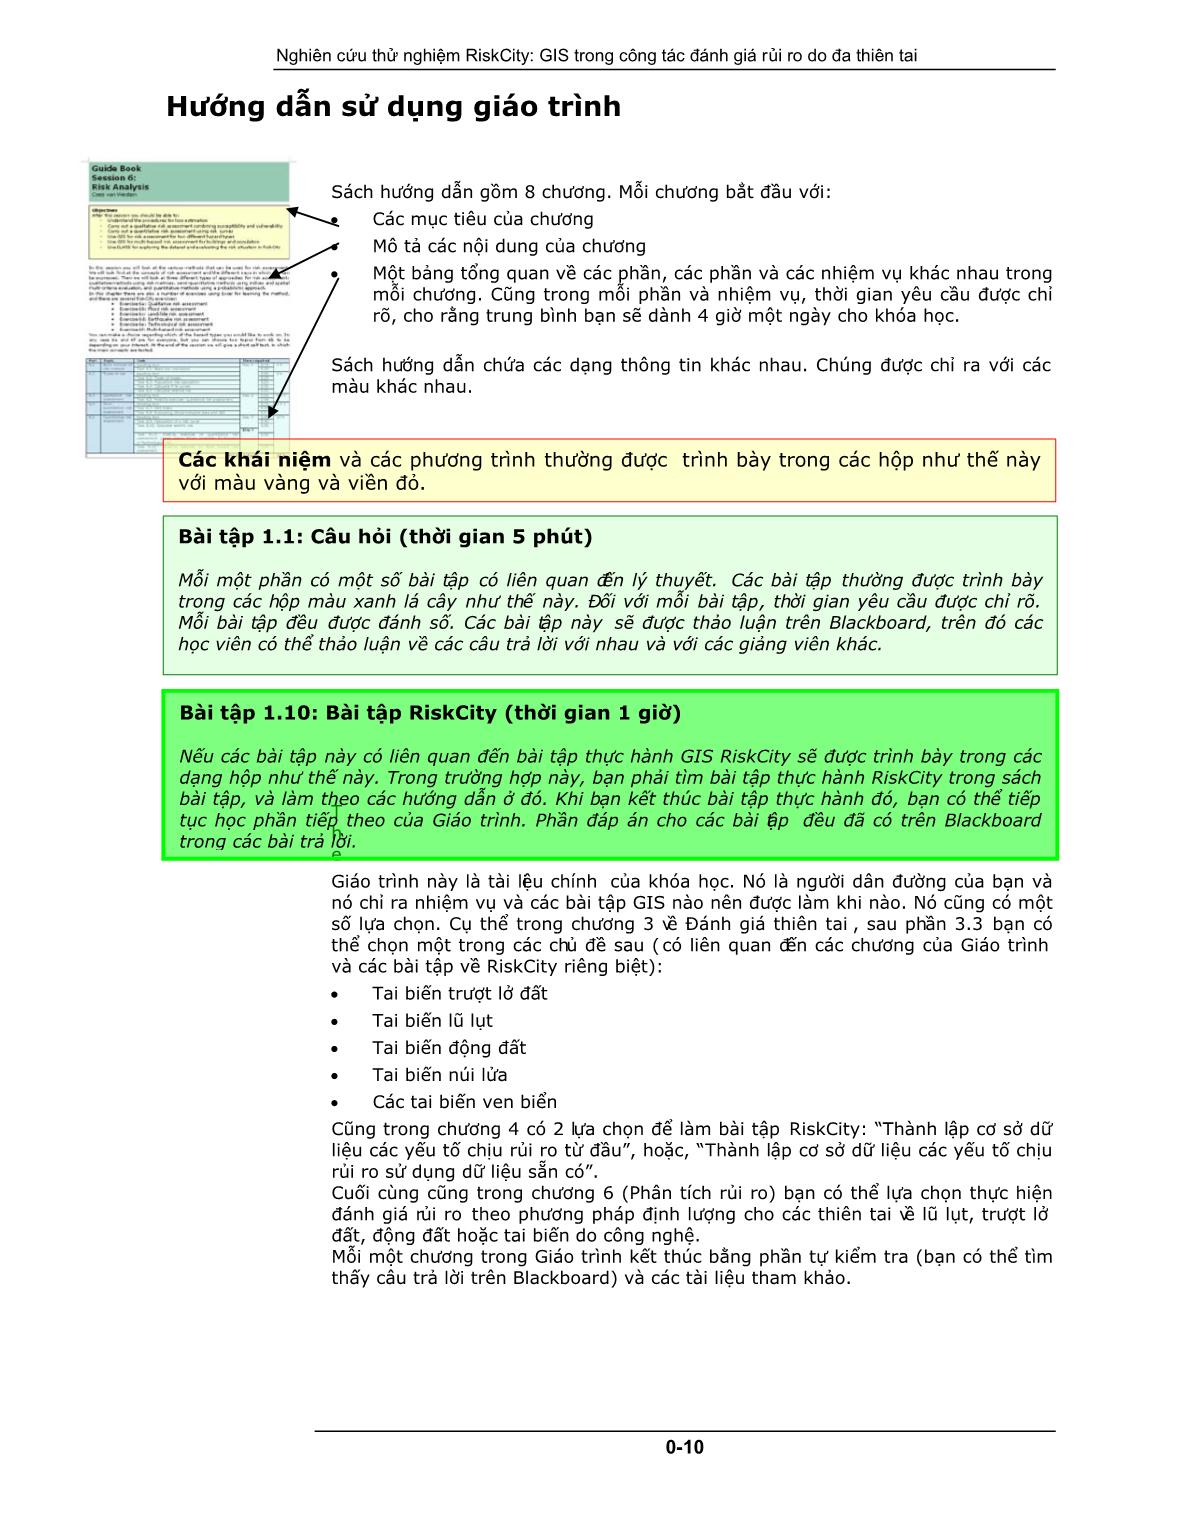 Giáo trình Ứng dụng Công nghệ Địa - Tin học trong Đánh giá Rủi ro do Tai biến trang 10